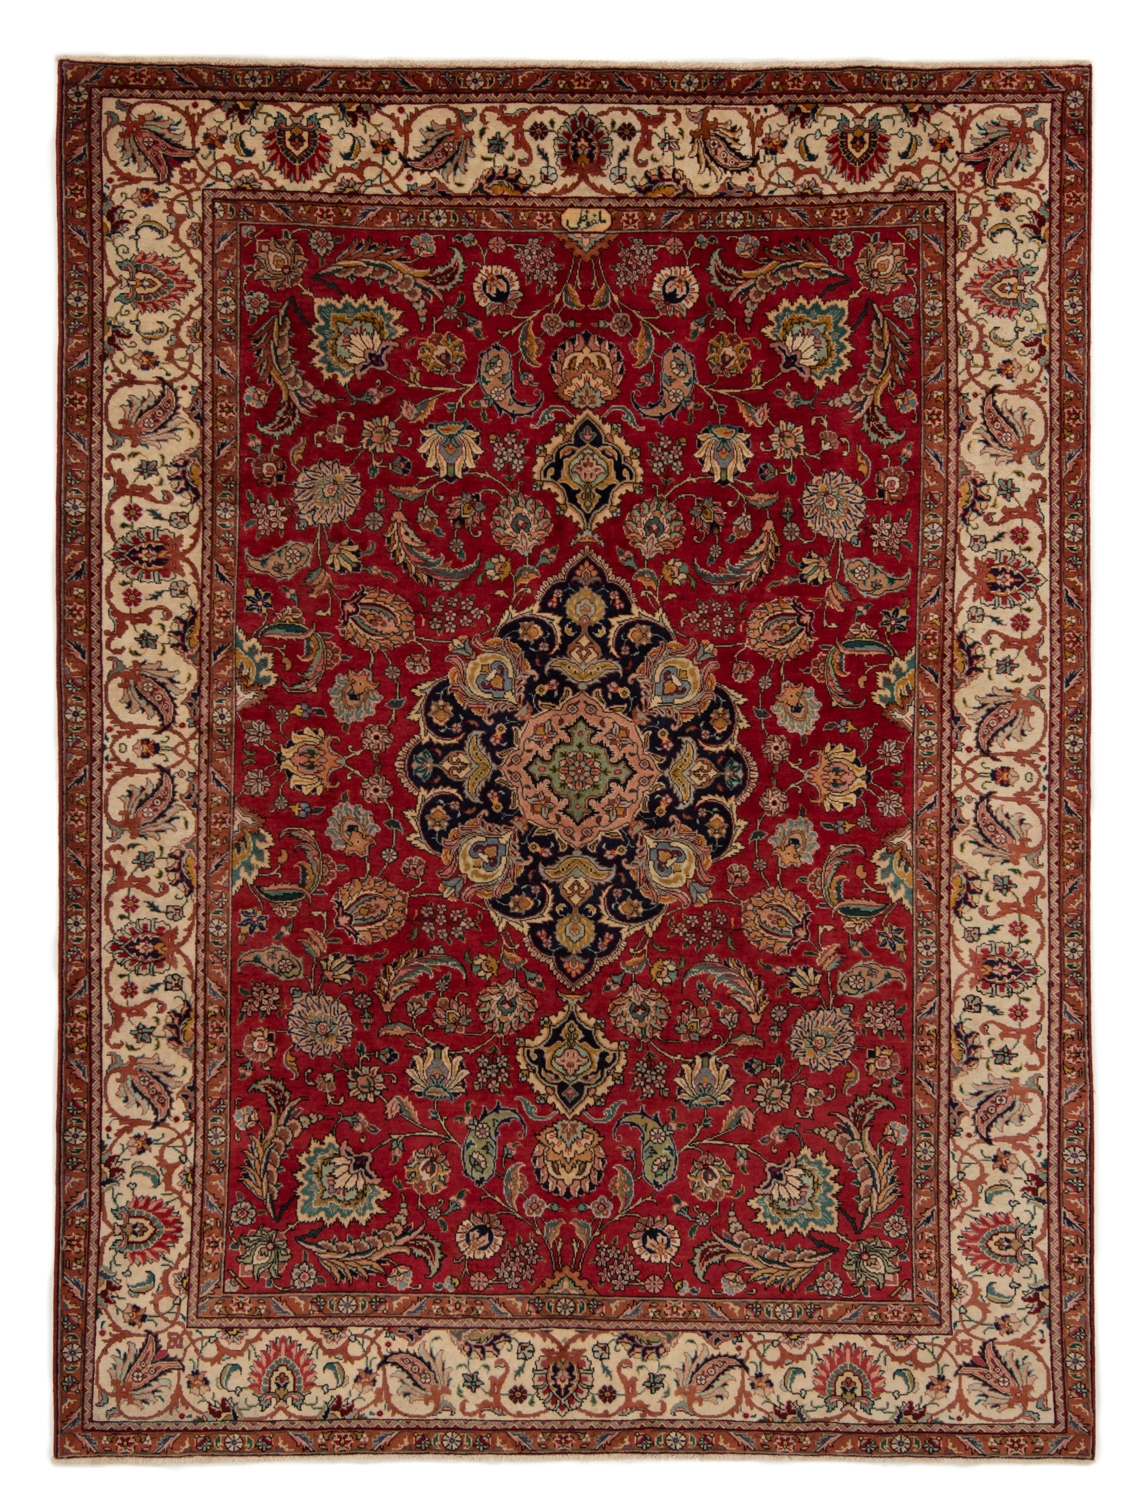 Tabriz Persian Rug Red 341 x 251 cm